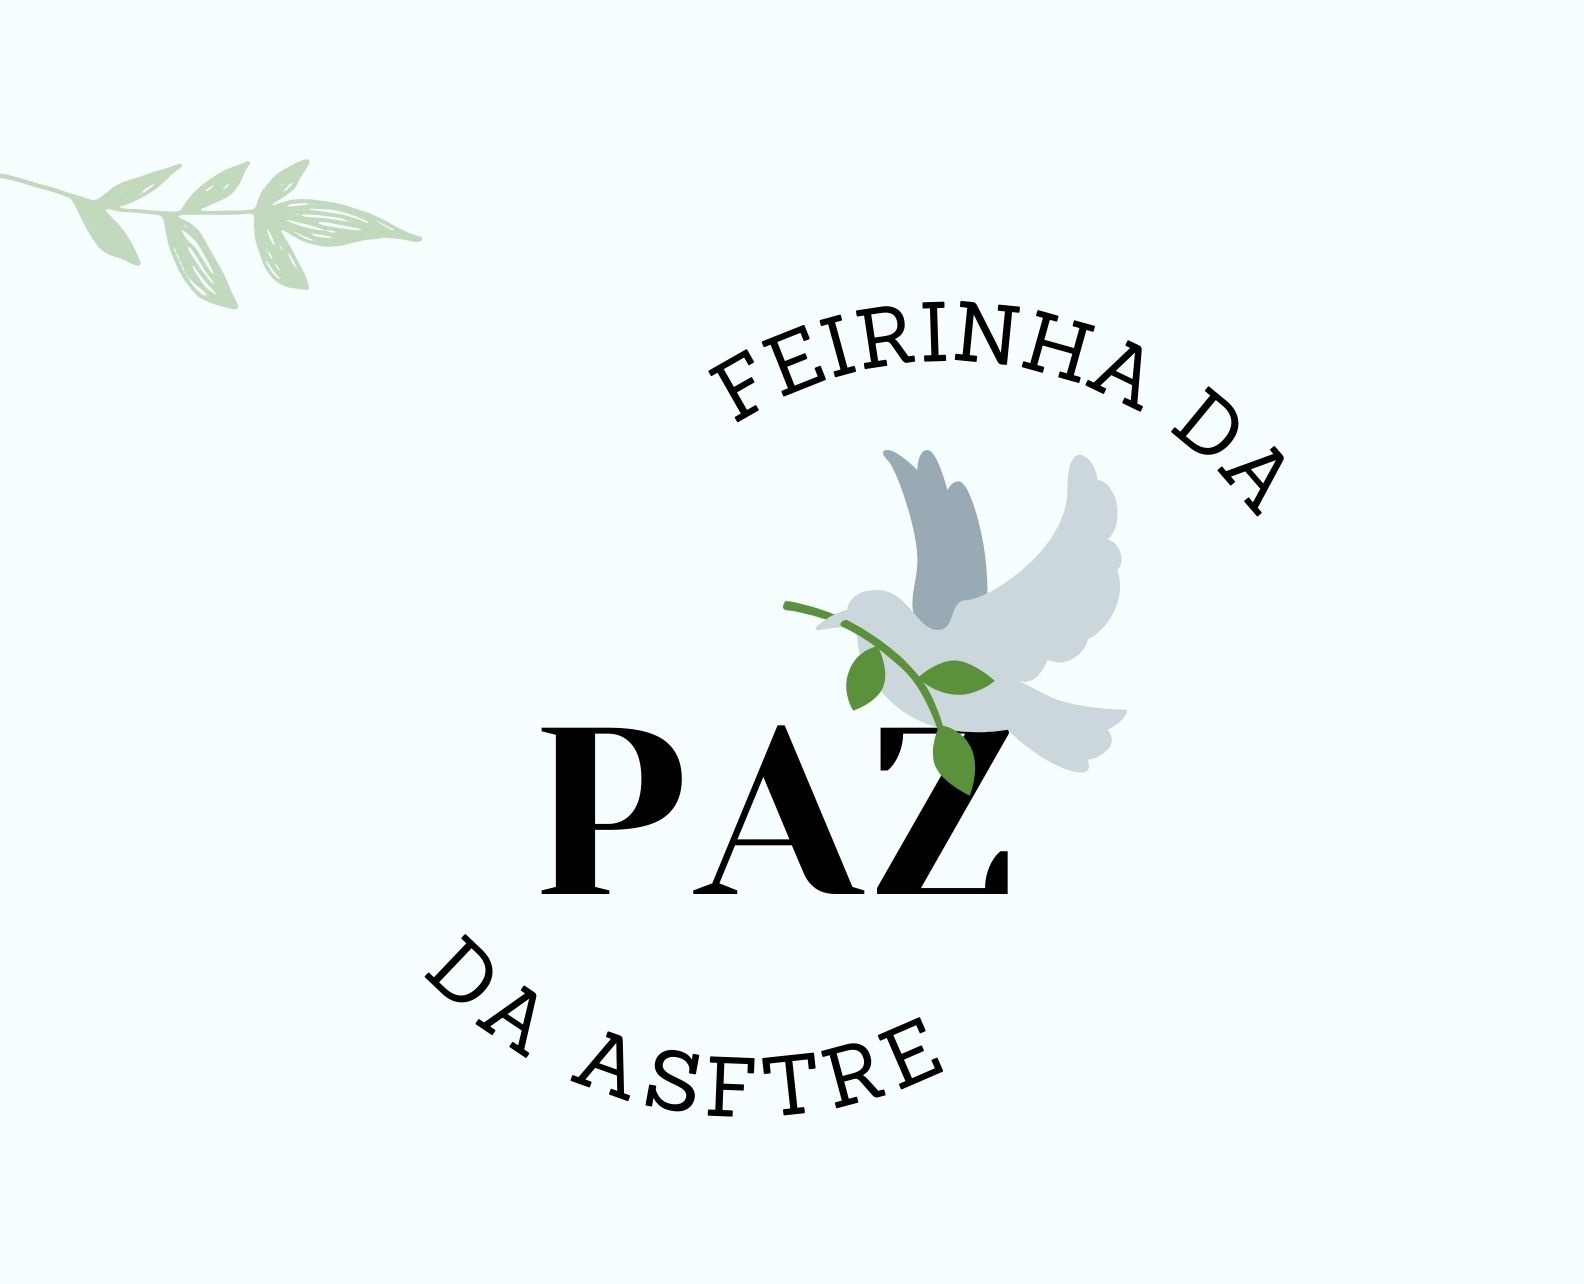 Banner com fundo verde claro, escrito Feirinha da Paz da ASFTRE, com uma pomba